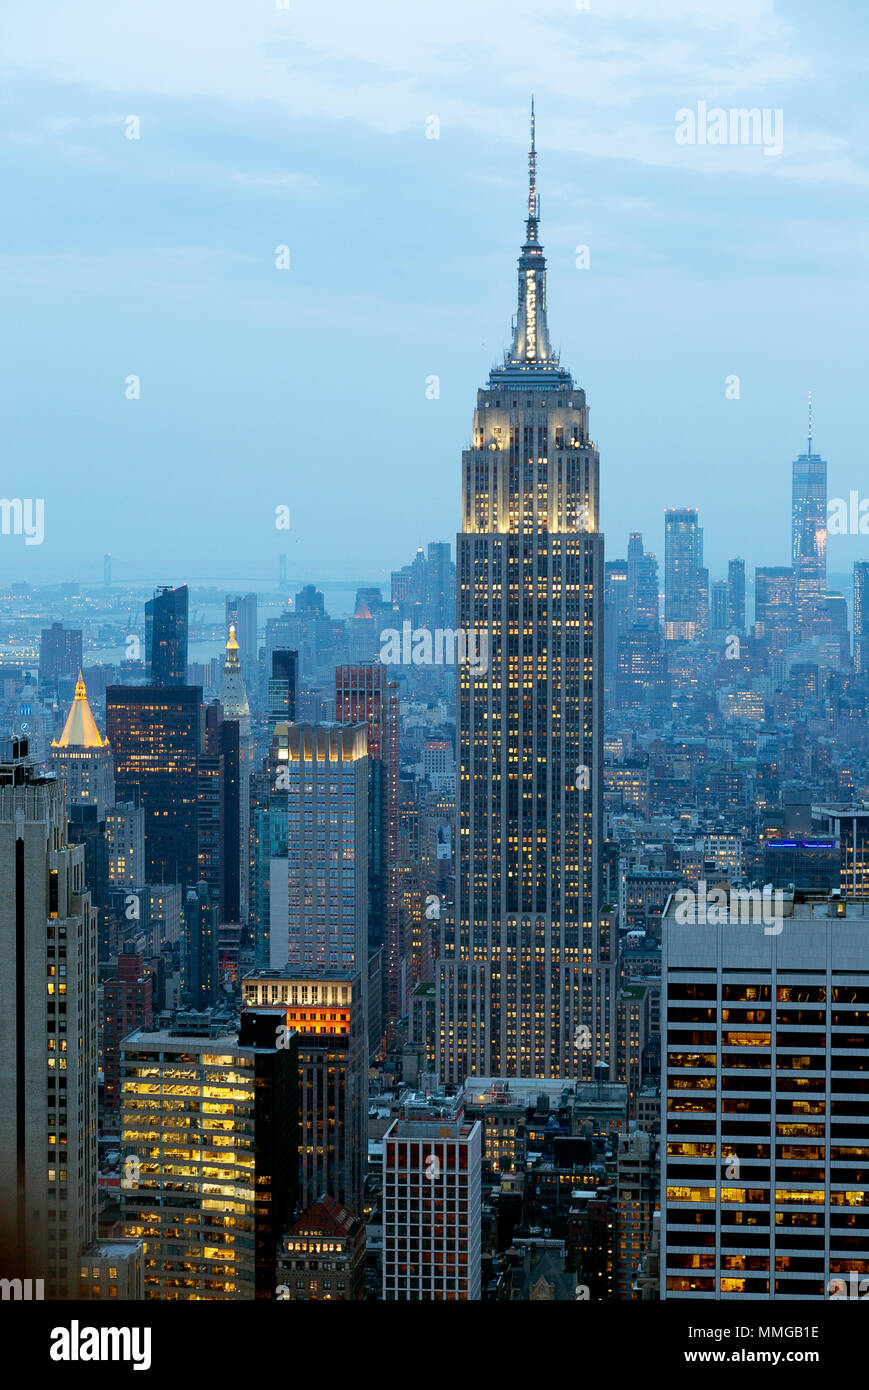 L'Empire State Building e la skyline di New York la sera visto dalla parte superiore della roccia, New York City Stati Uniti d'America Foto Stock